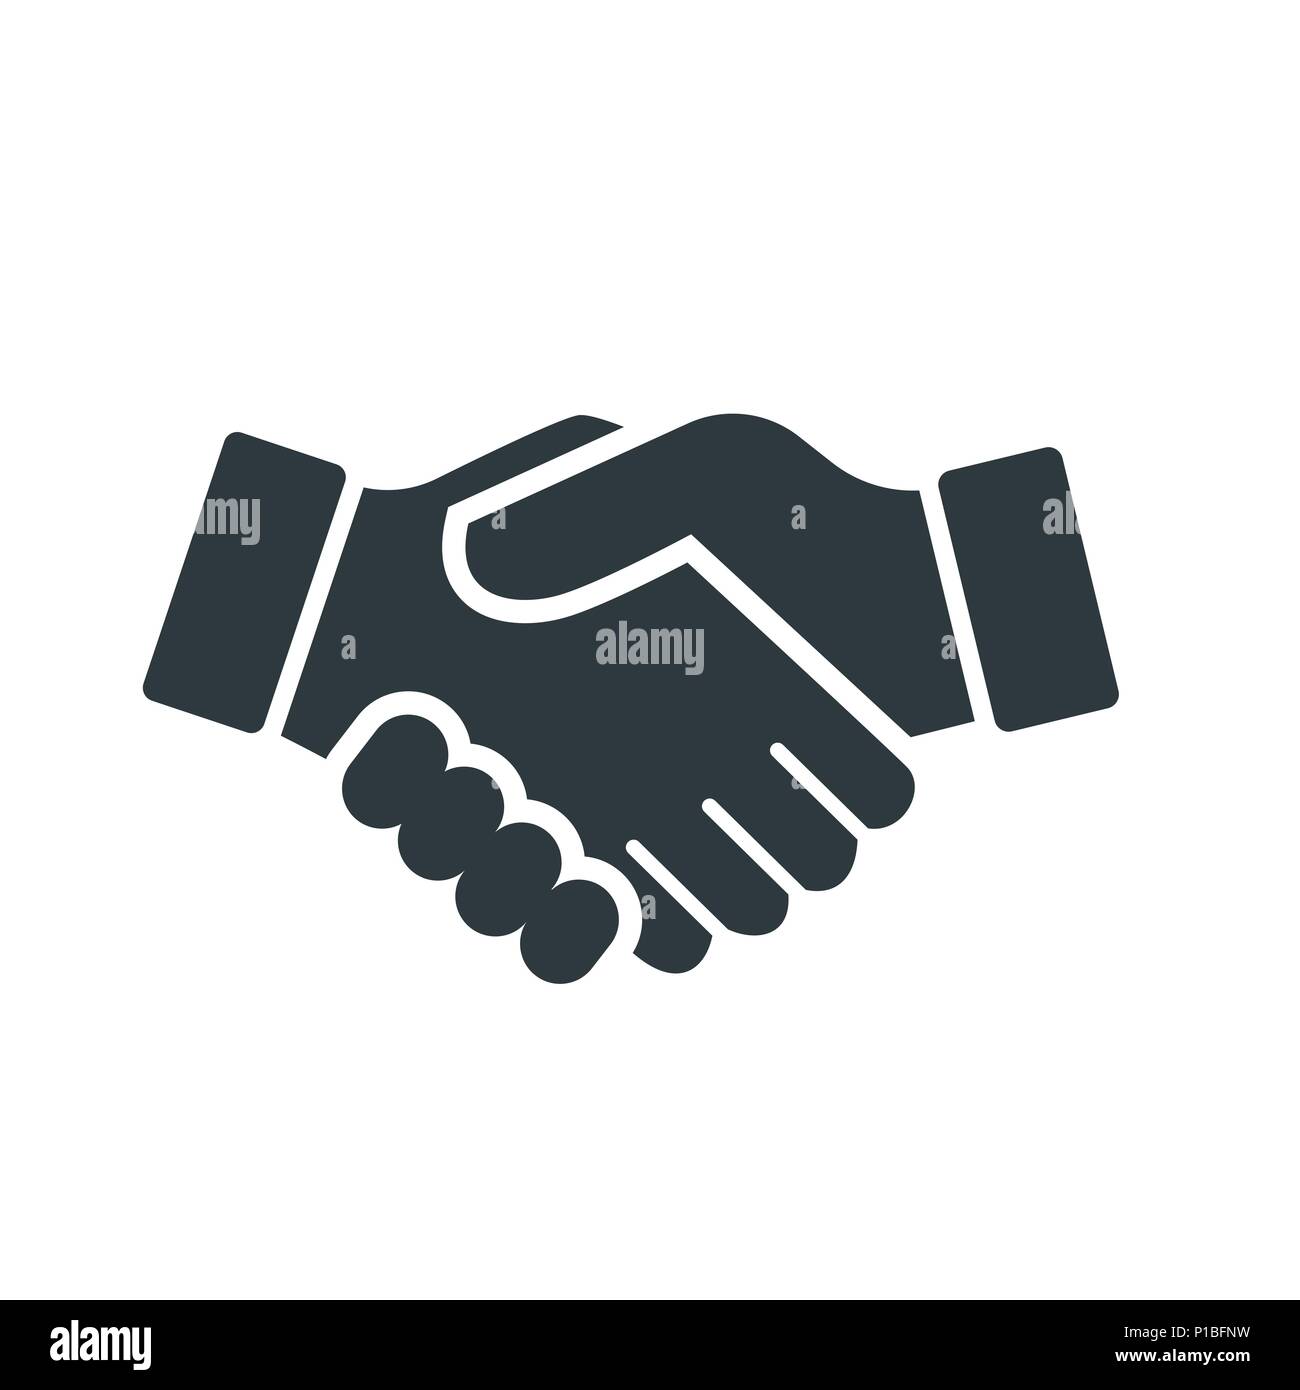 Der Vektor der Handshake Symbol auf weißem Hintergrund - Vektor ikonisches Design Stock Vektor